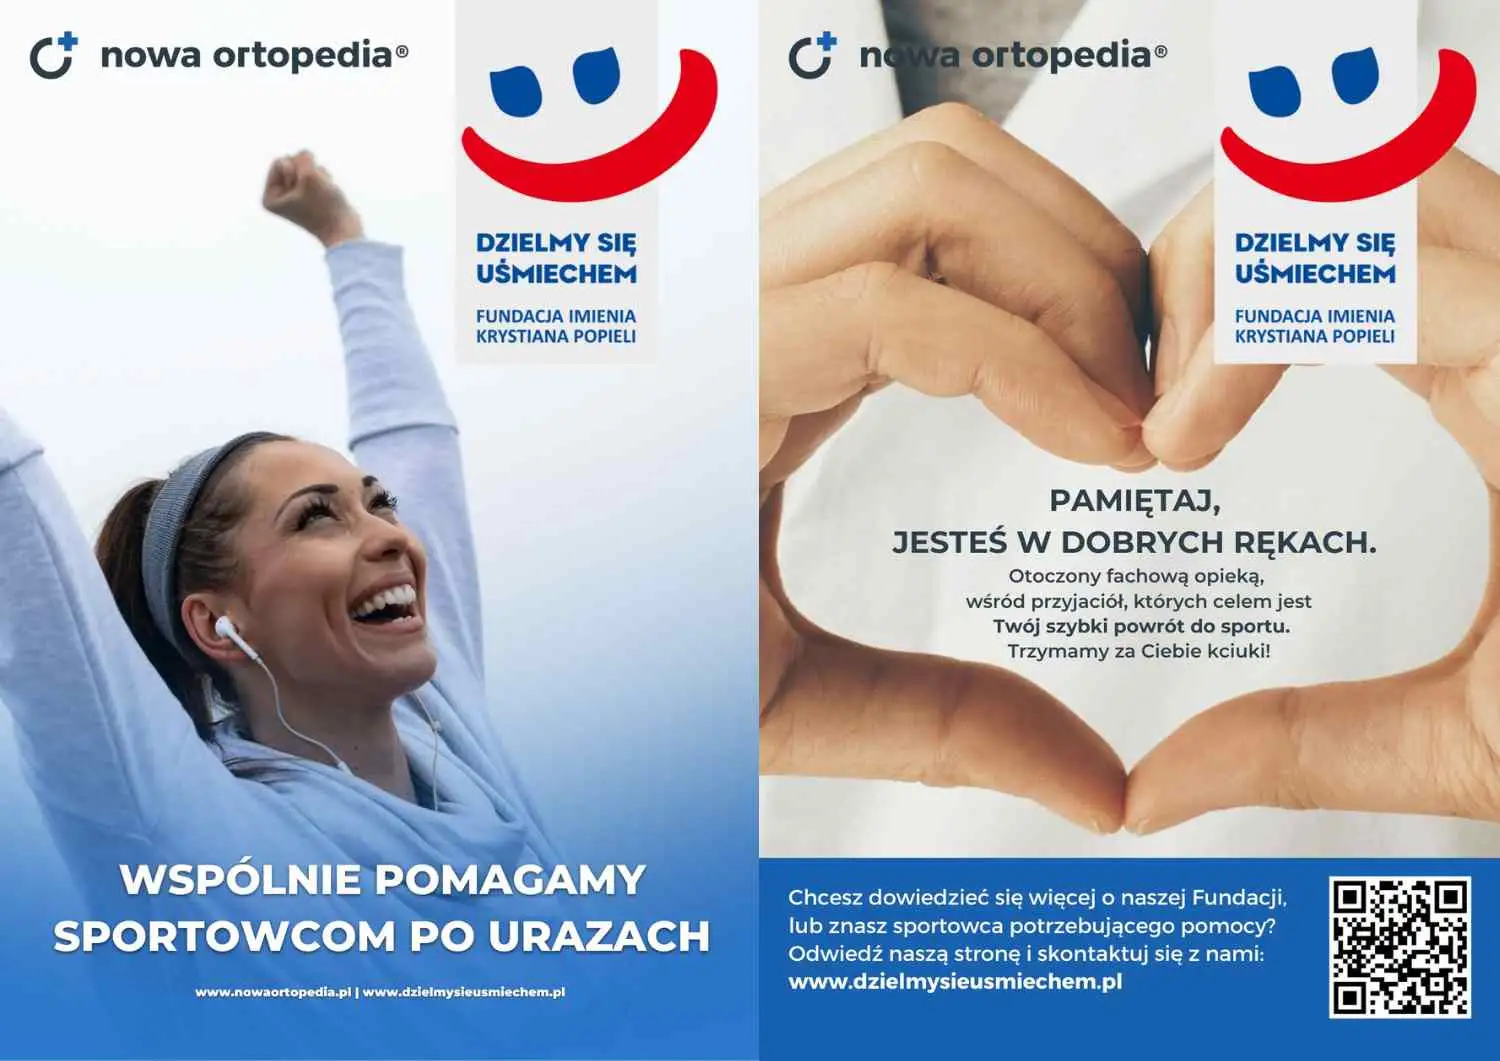  NowaOrtopedia podjęła współpracę partnerską z Fundacją Dzielmy Się Uśmiechem!